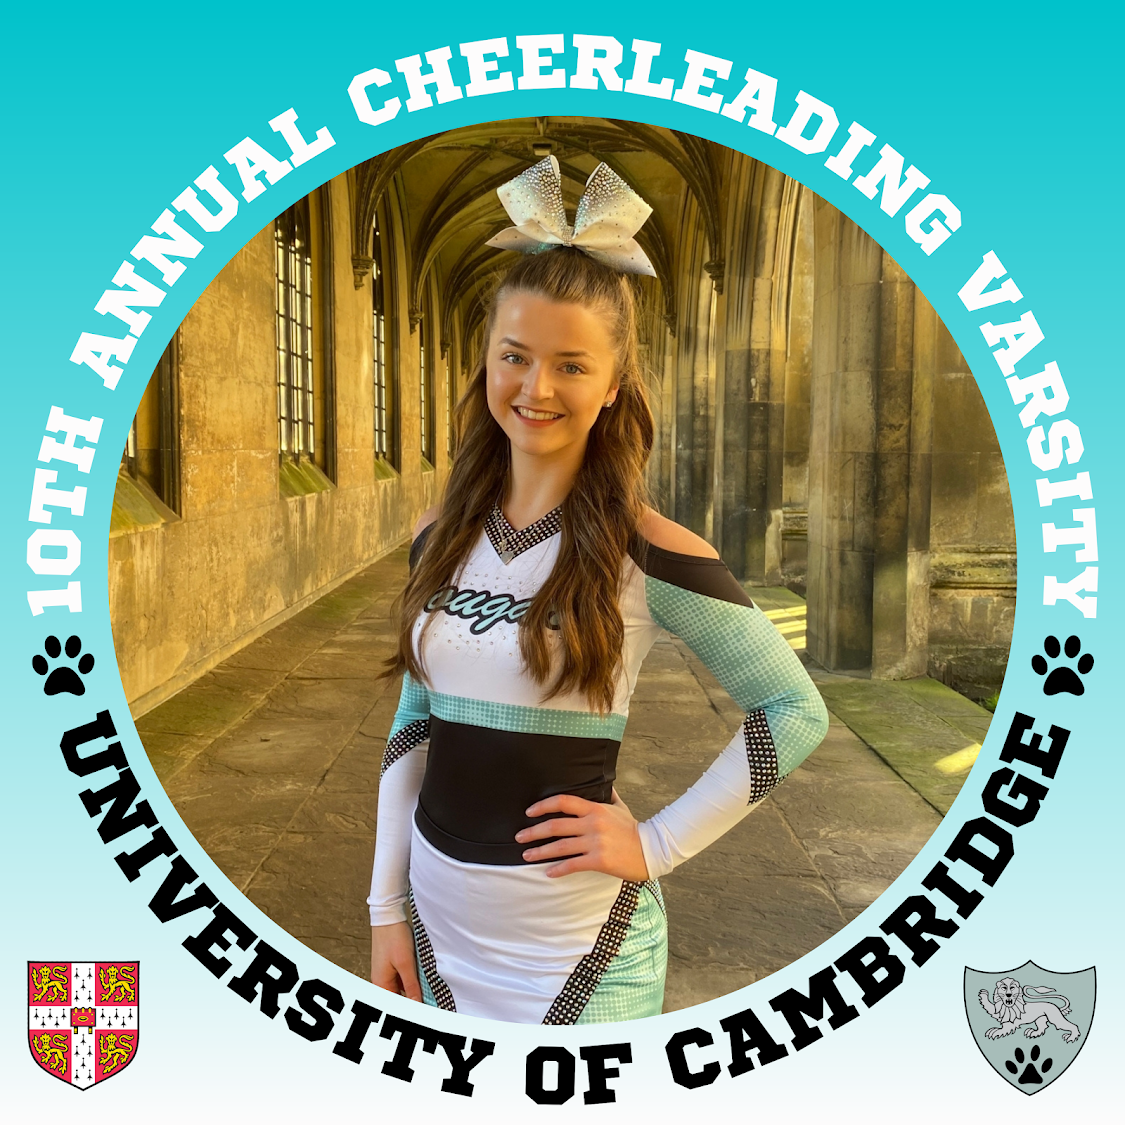 A cheerleader in a Cambridge uniform